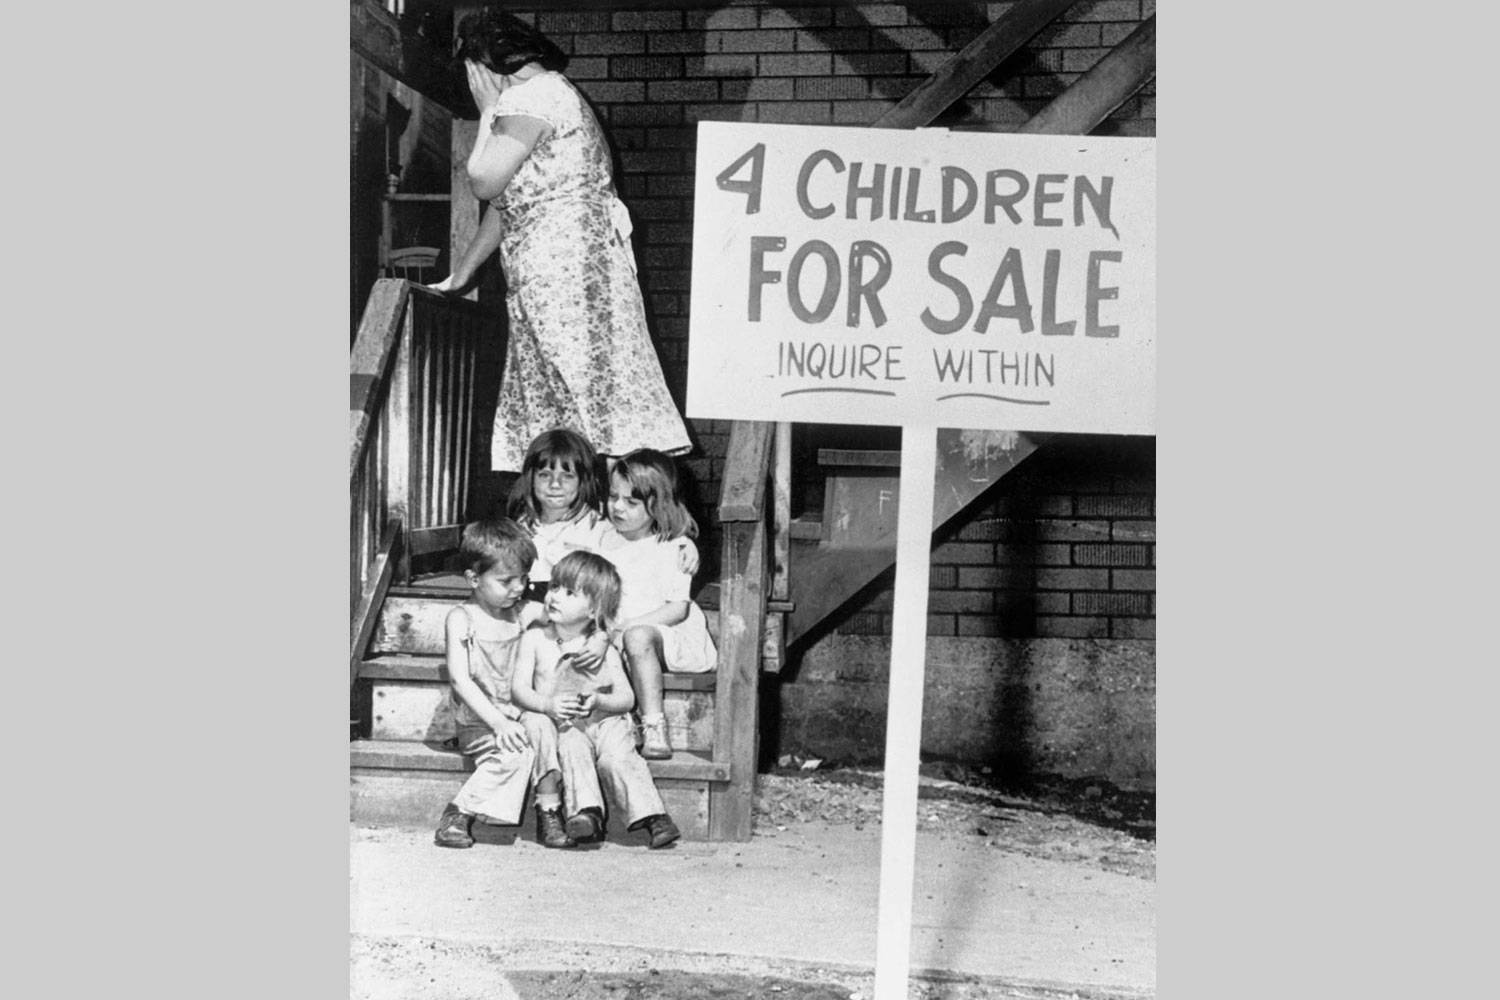 Négy gyerek eladó, Chicago, 1948. augusztus 4.